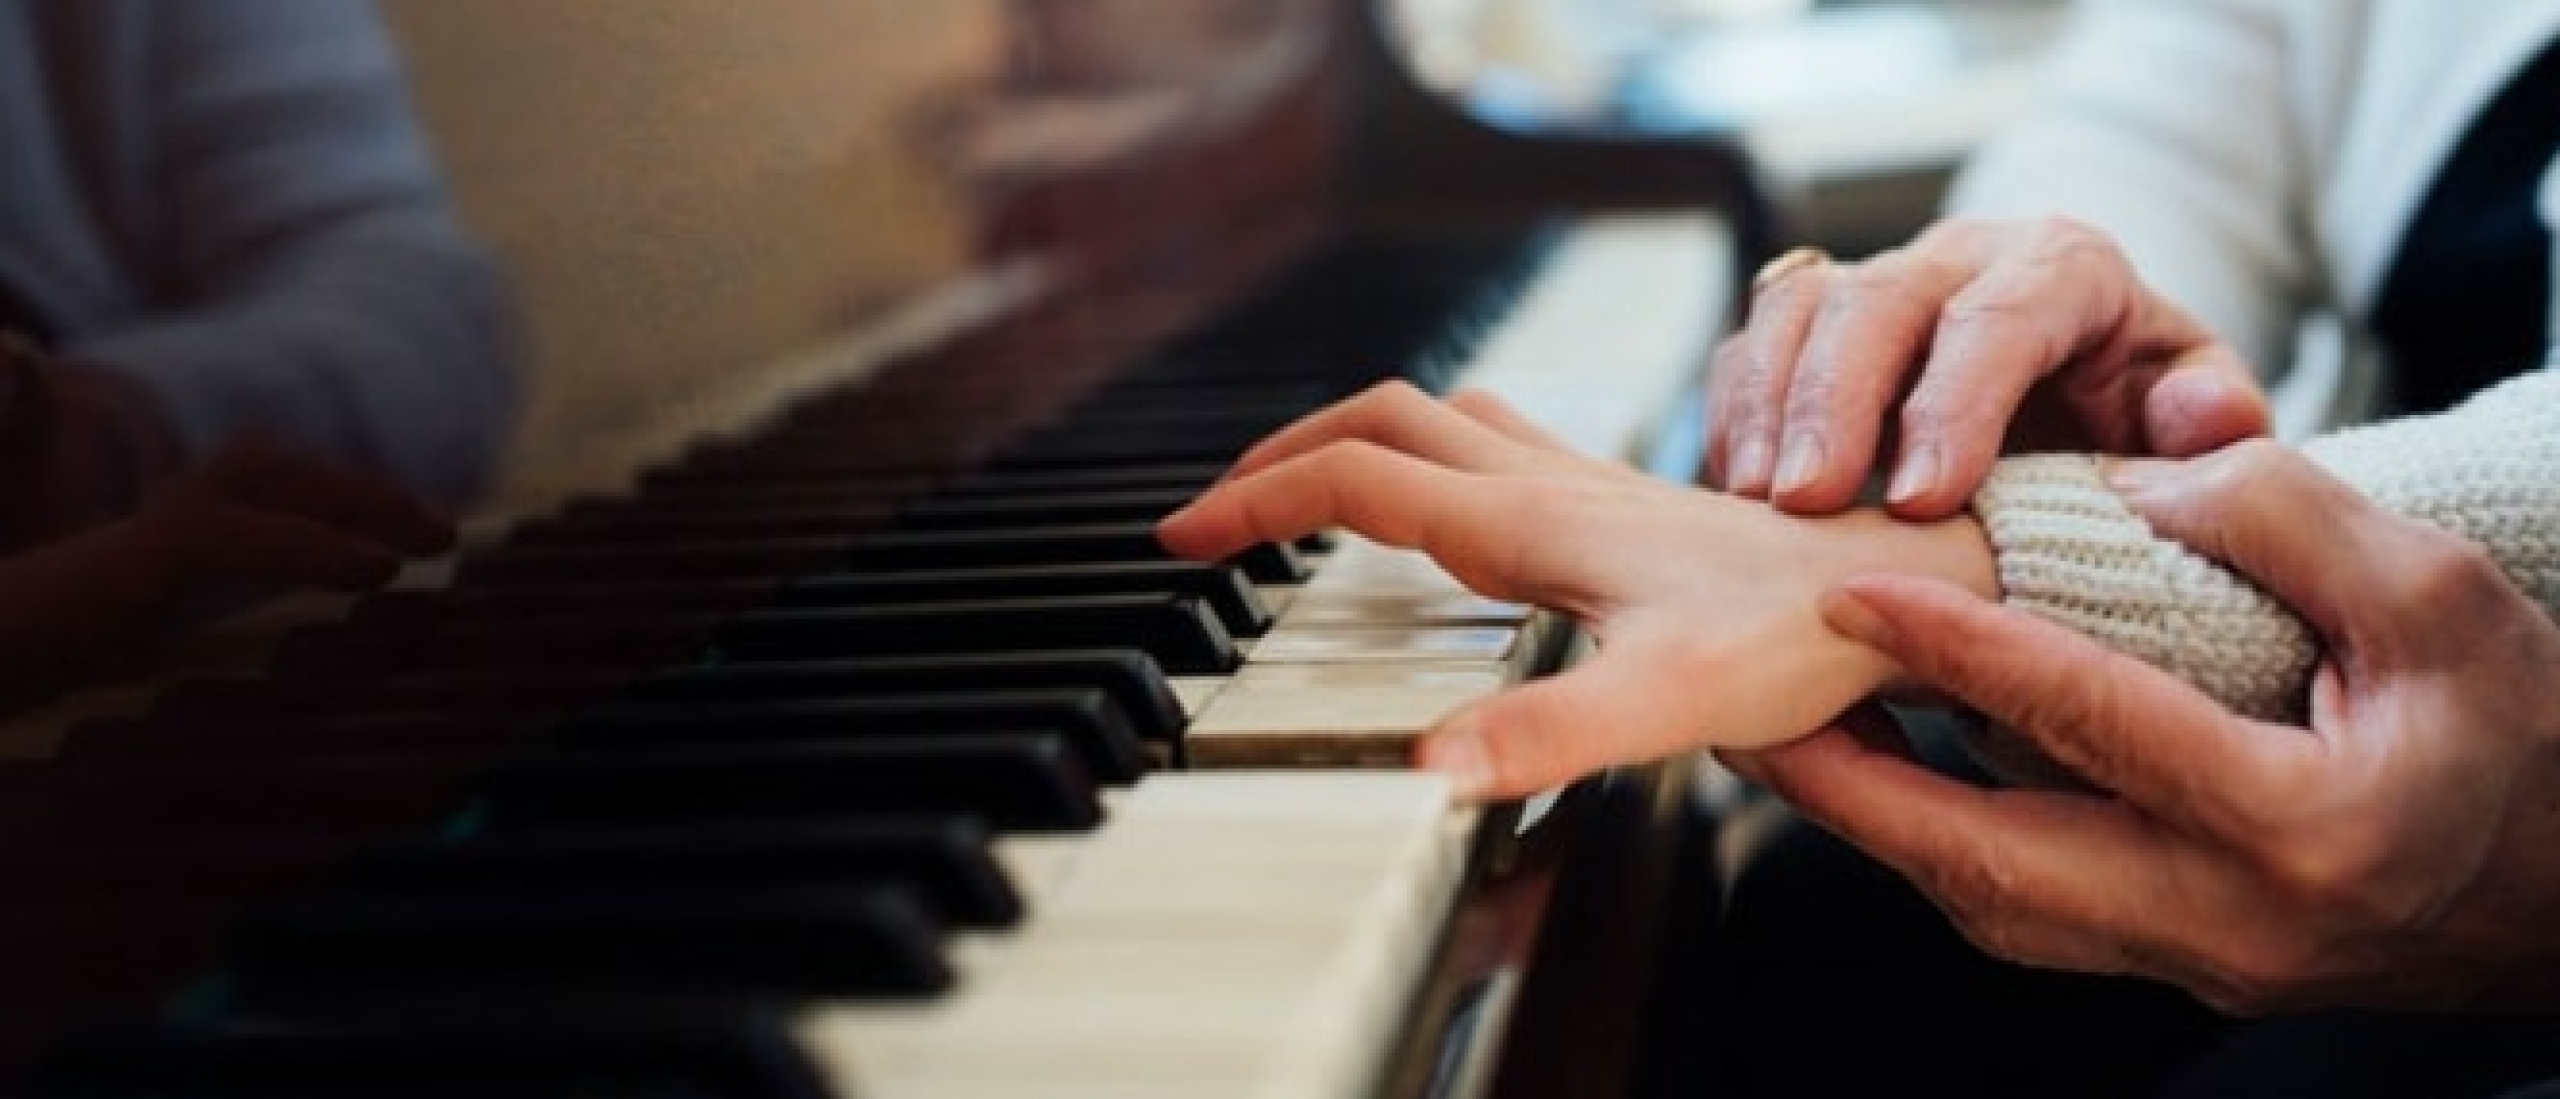 Online cursus pianospelen voor beginners